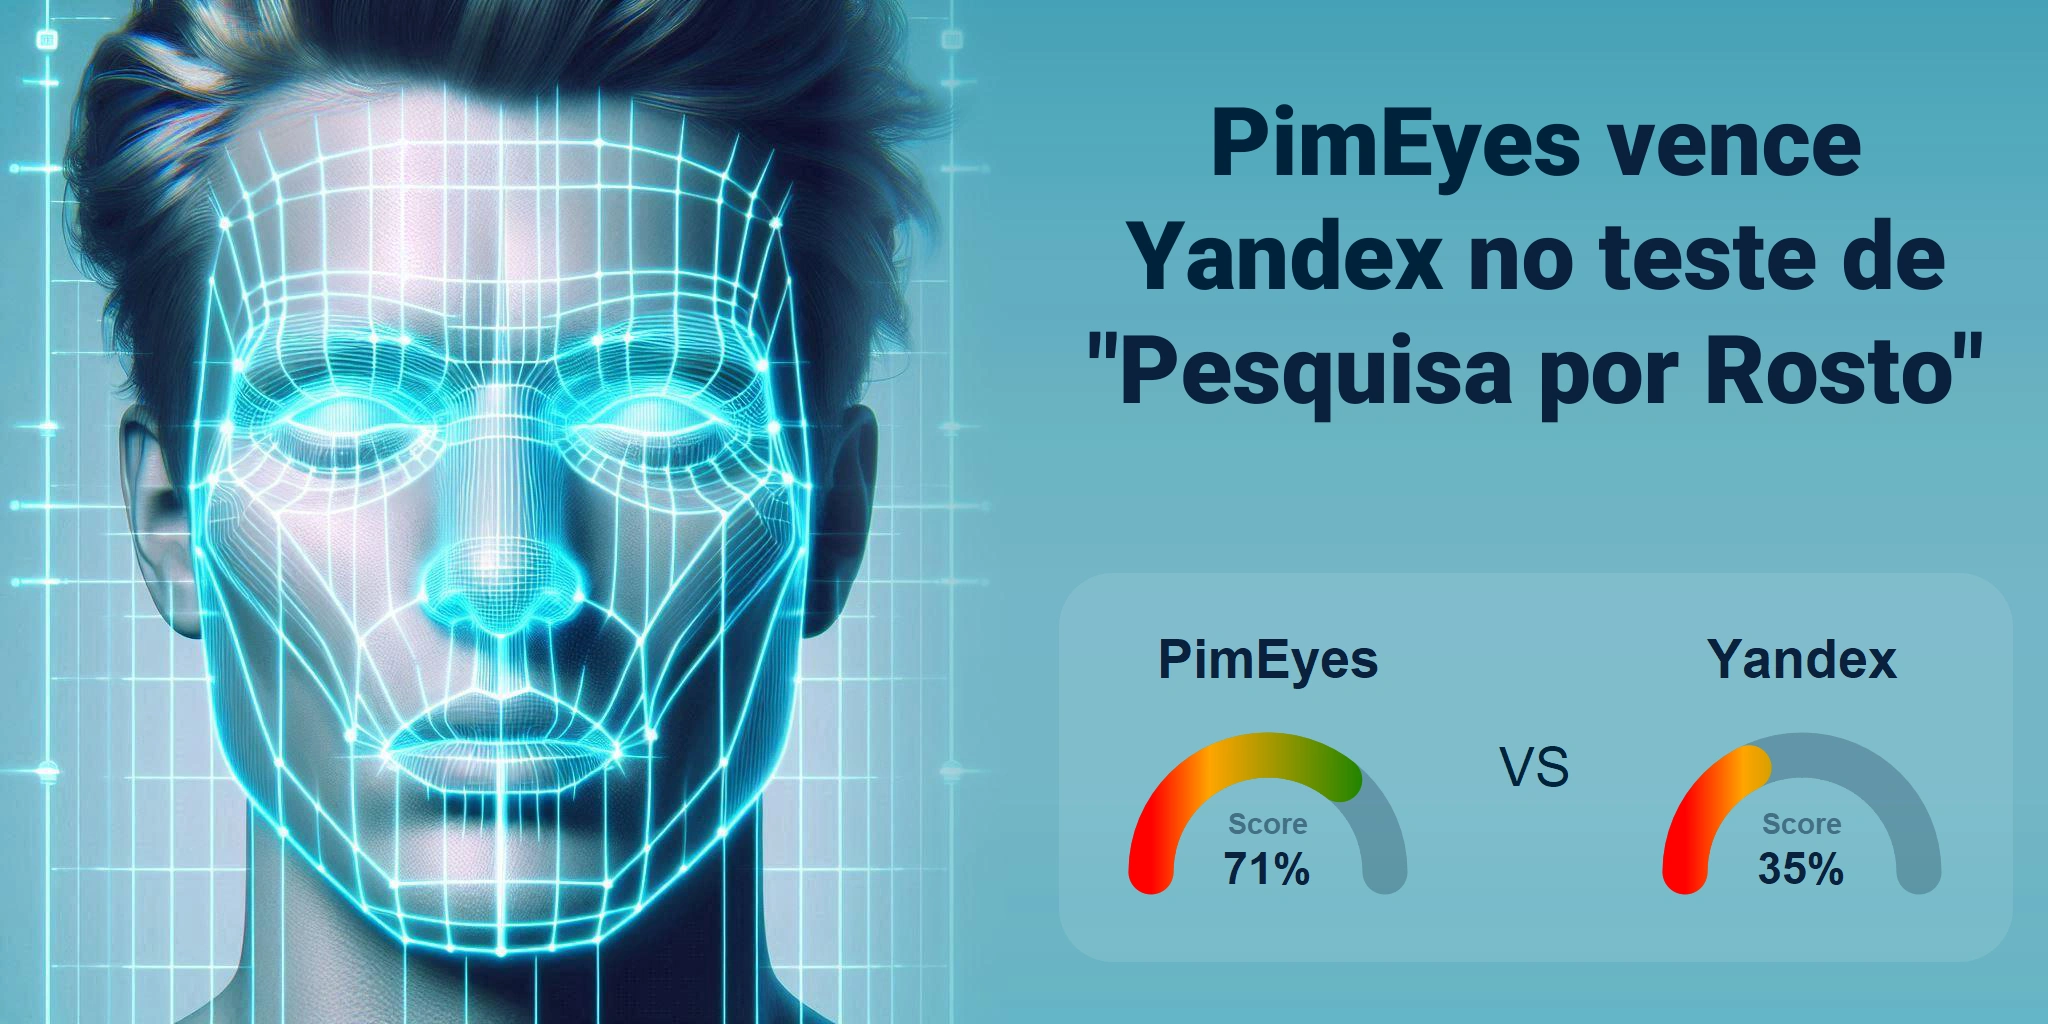 Qual é melhor para busca de rostos: <br>PimEyes ou Yandex?